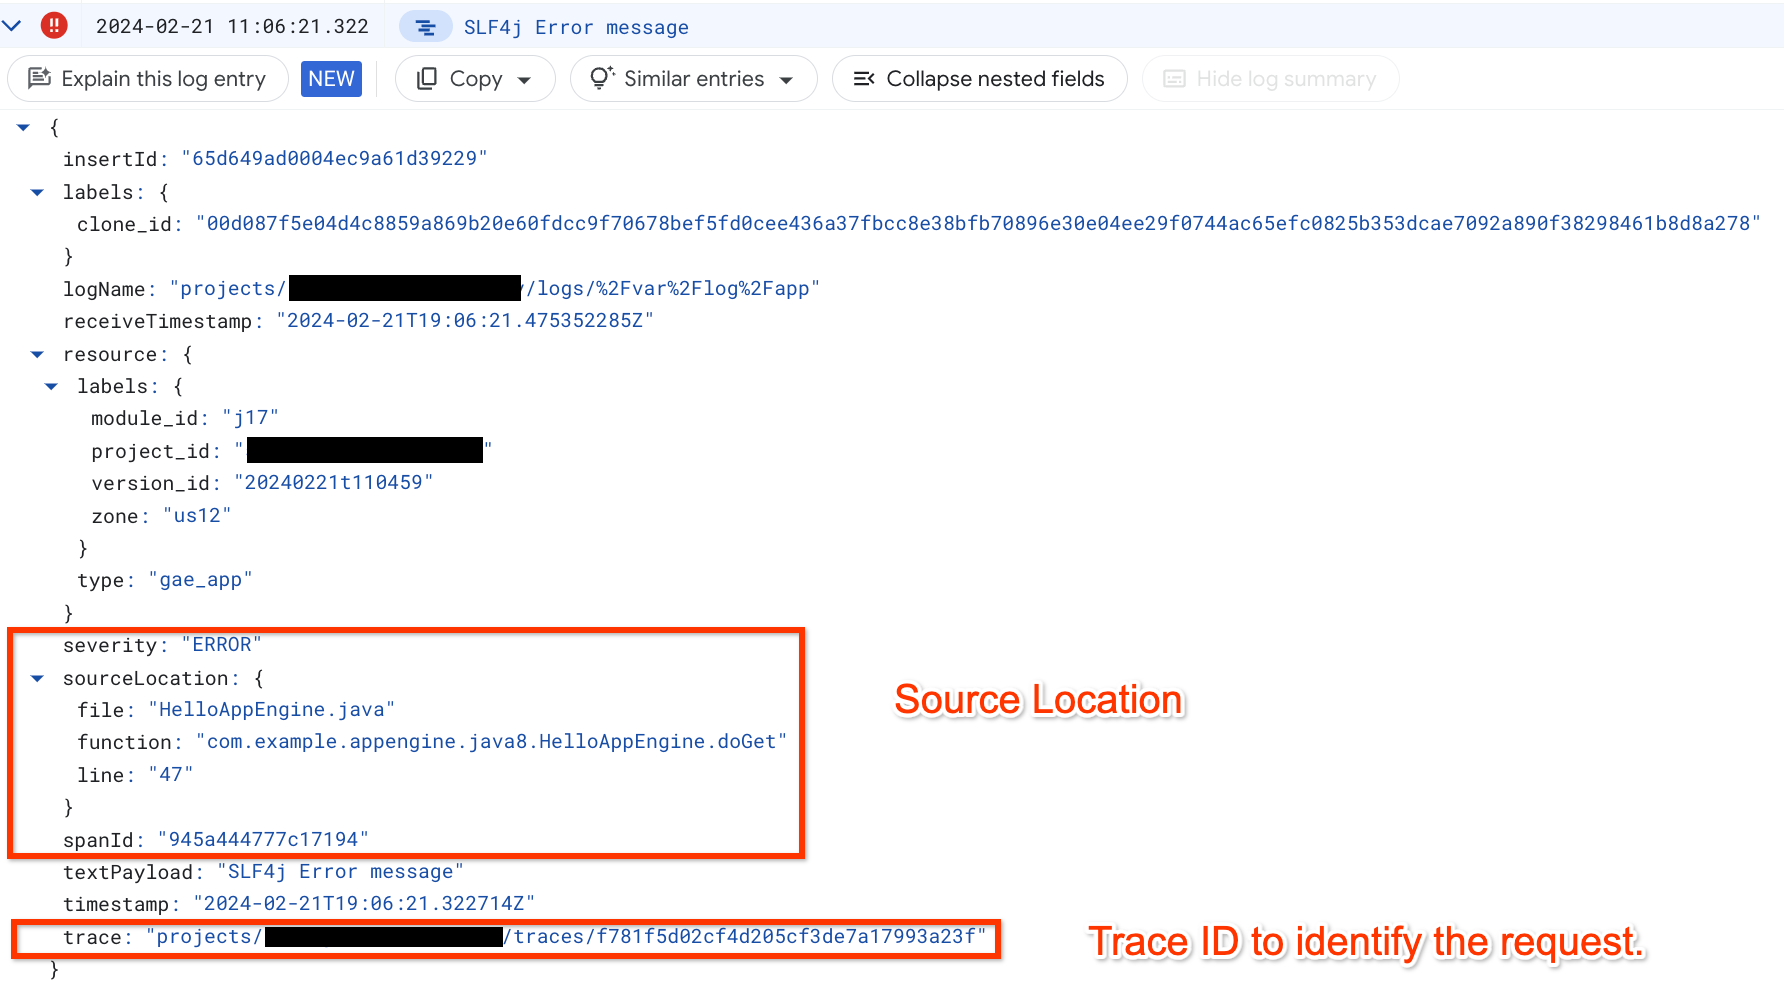 Agrupar registros de apps por solicitação com um ID de trace